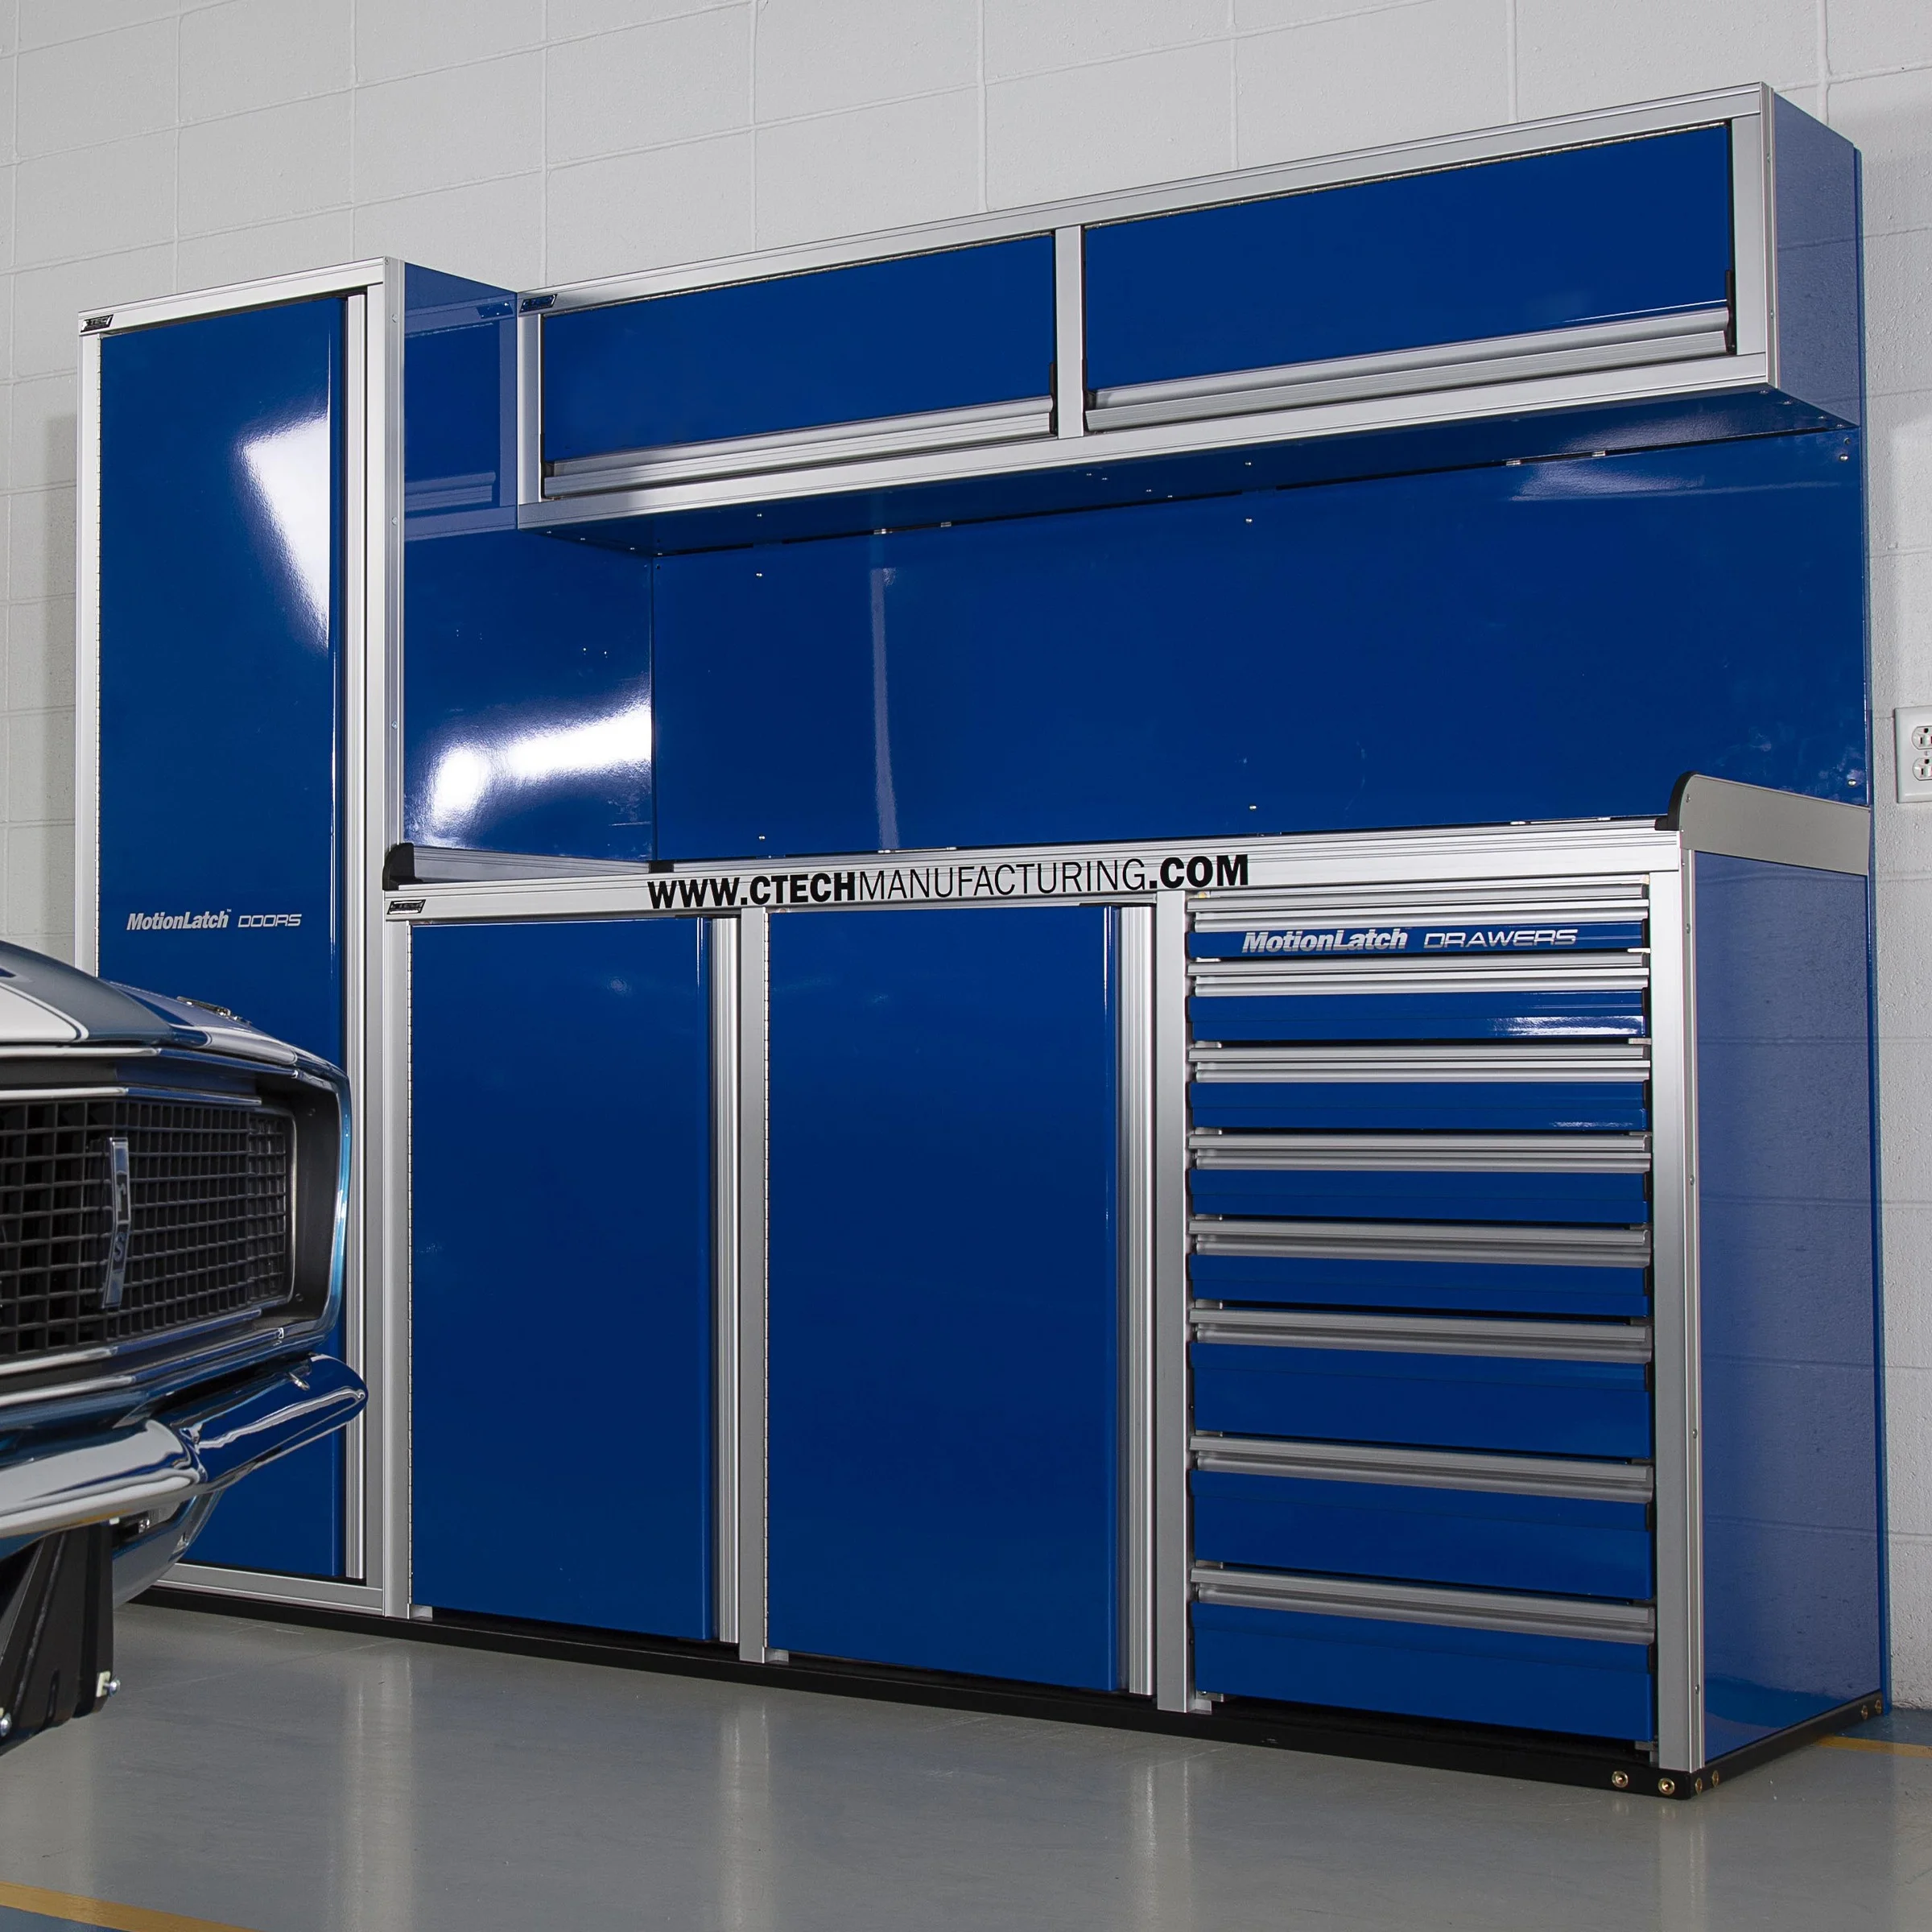 Blog - The 10 Best Garage Cabinets